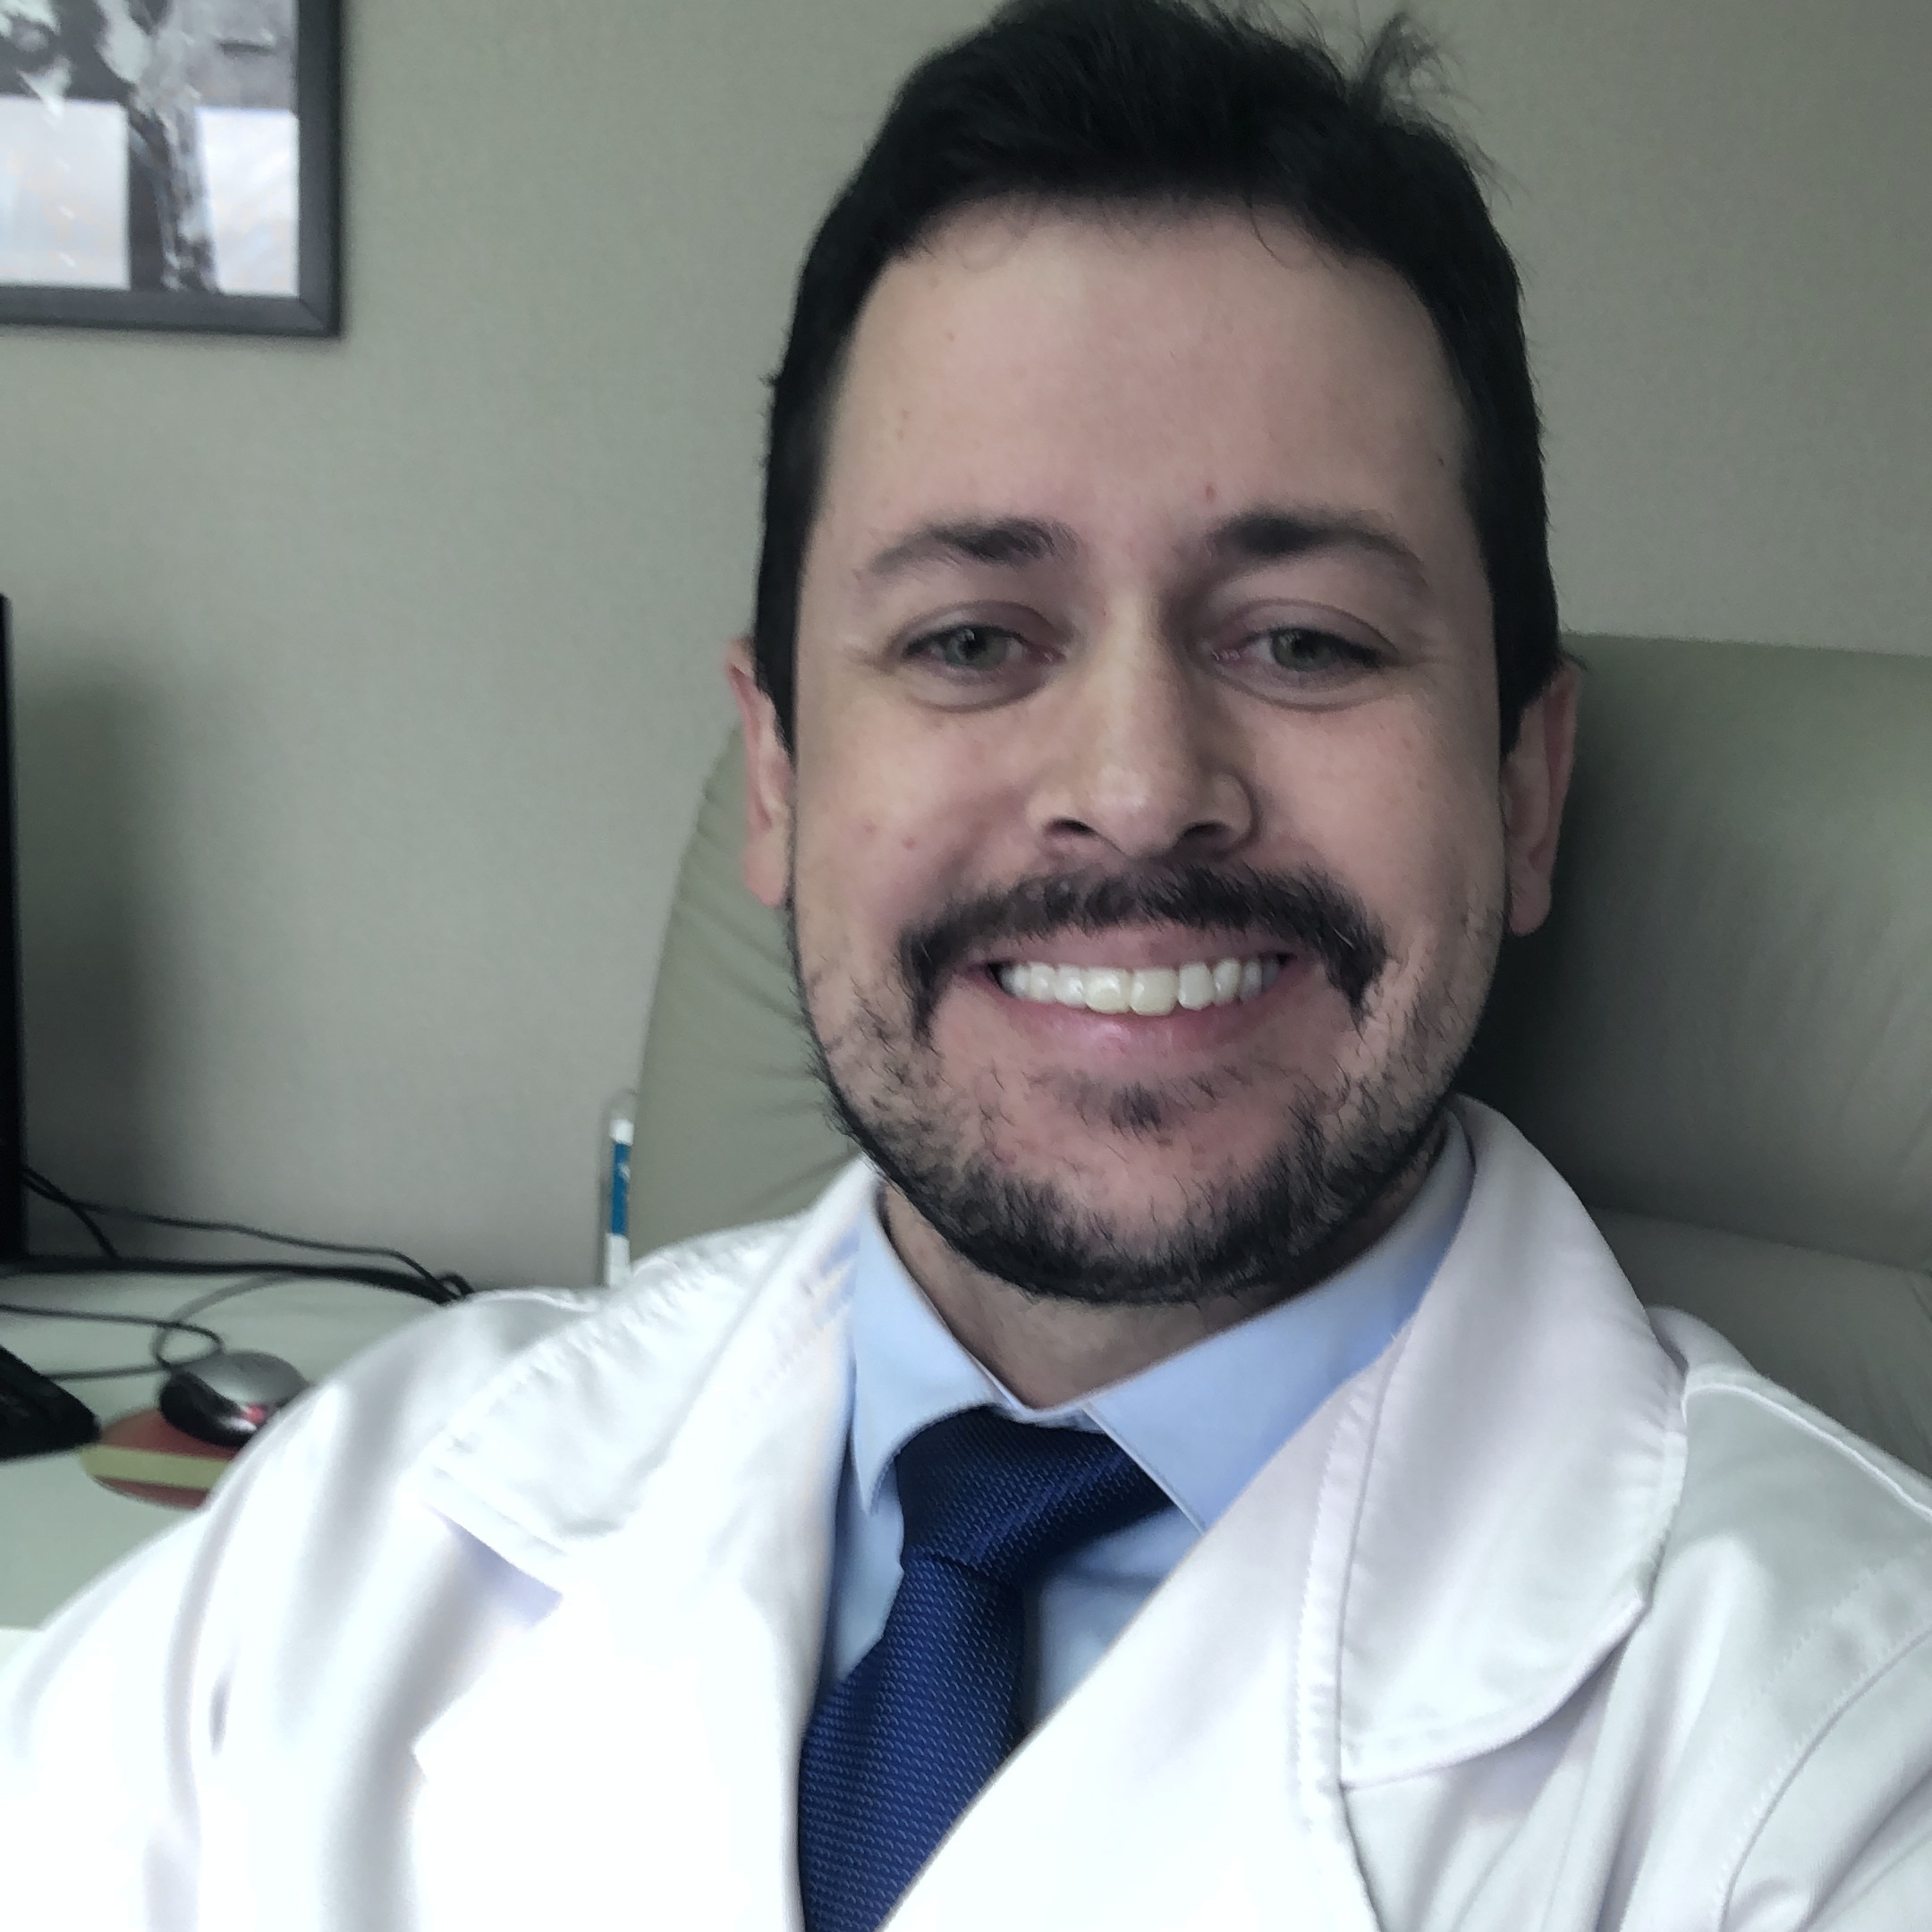 Dr. Diego Rocha Moreira